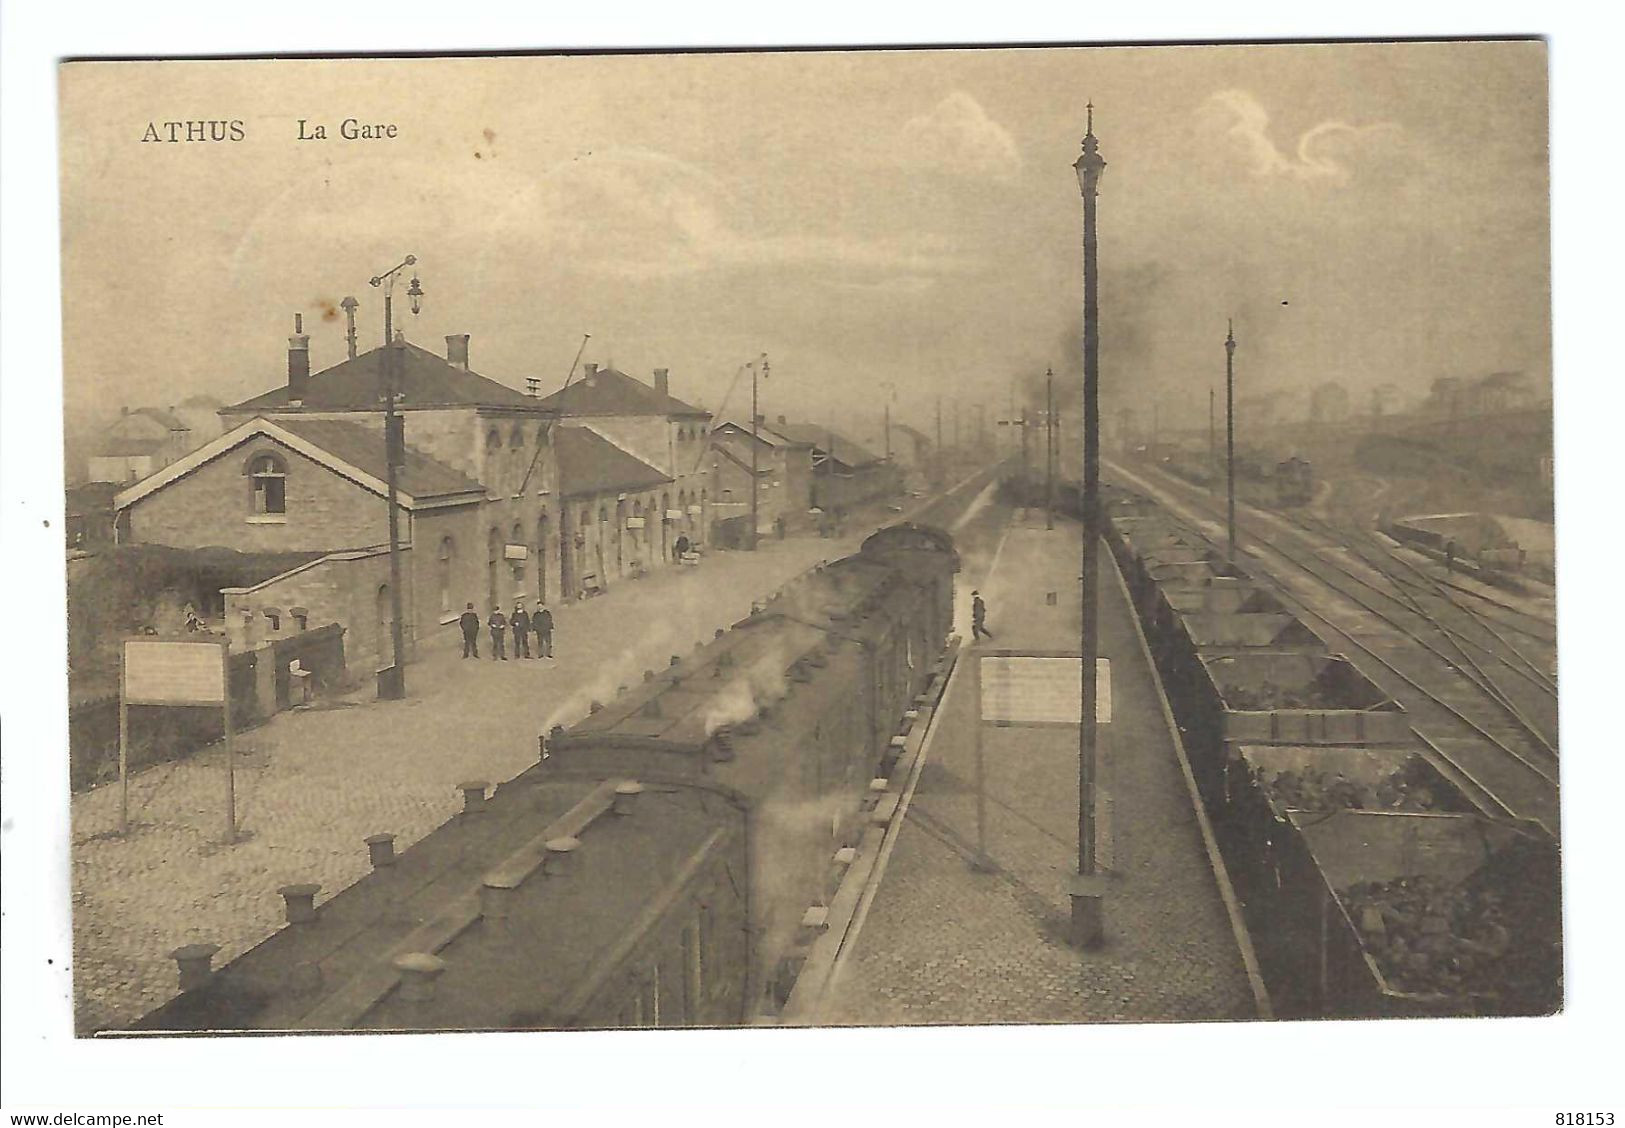 ATHUS   La Gare  1920 - Aubange